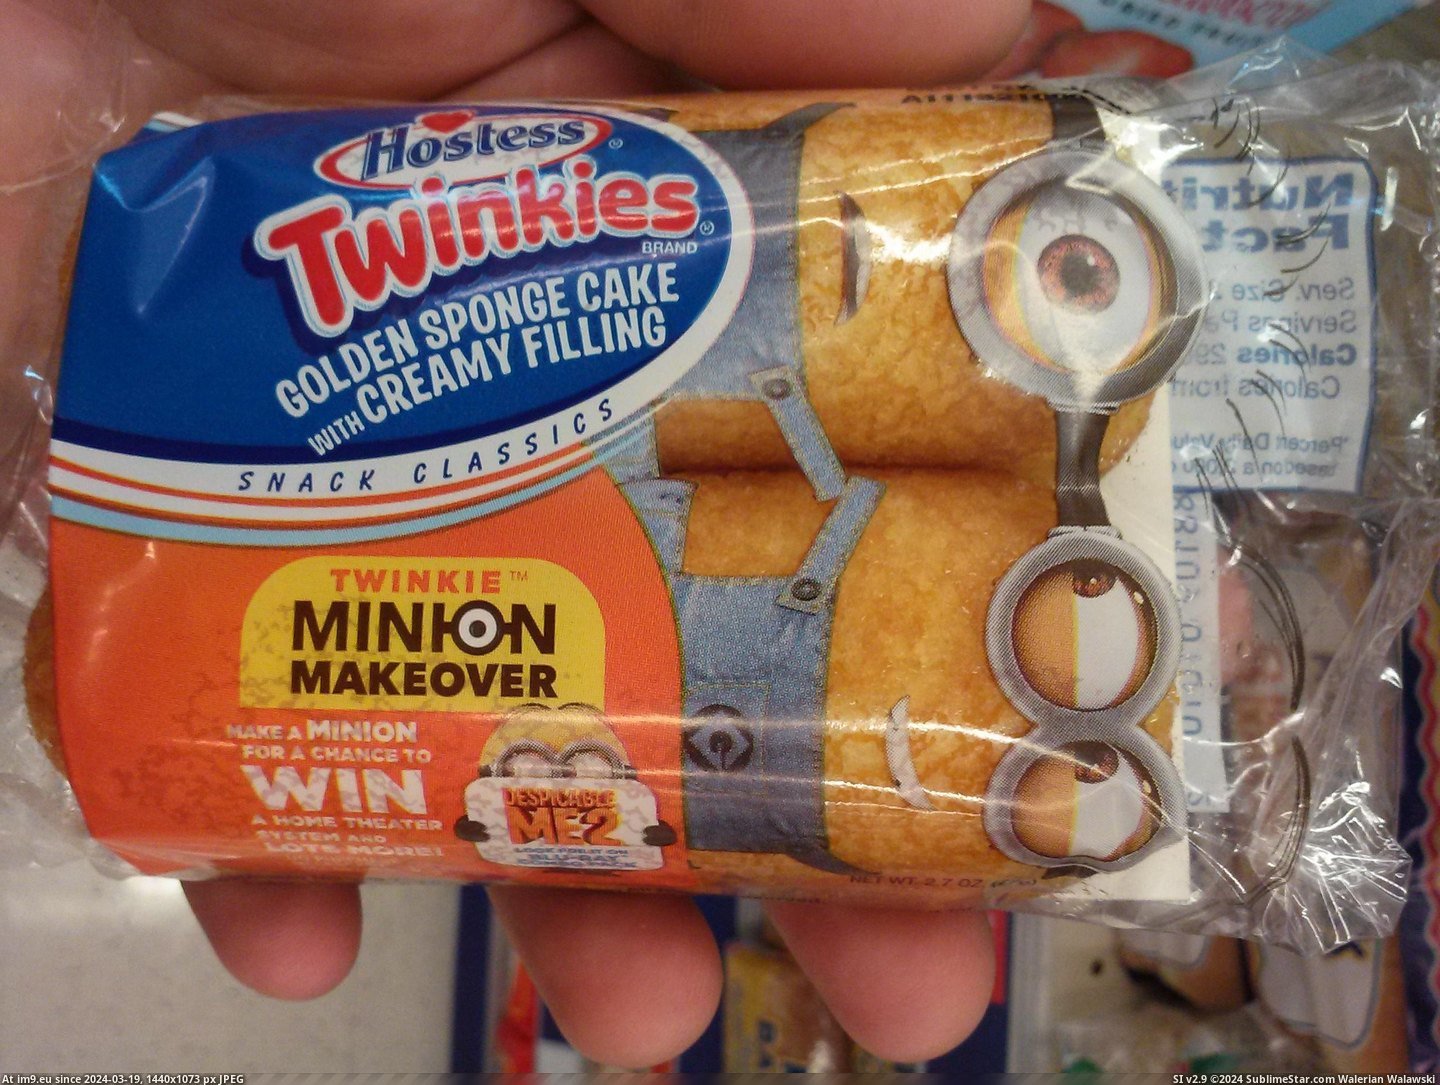 #New #Twinkies #Packaging [Mildlyinteresting] Has anyone seen the new Twinkies packaging? Pic. (Bild von album My r/MILDLYINTERESTING favs))